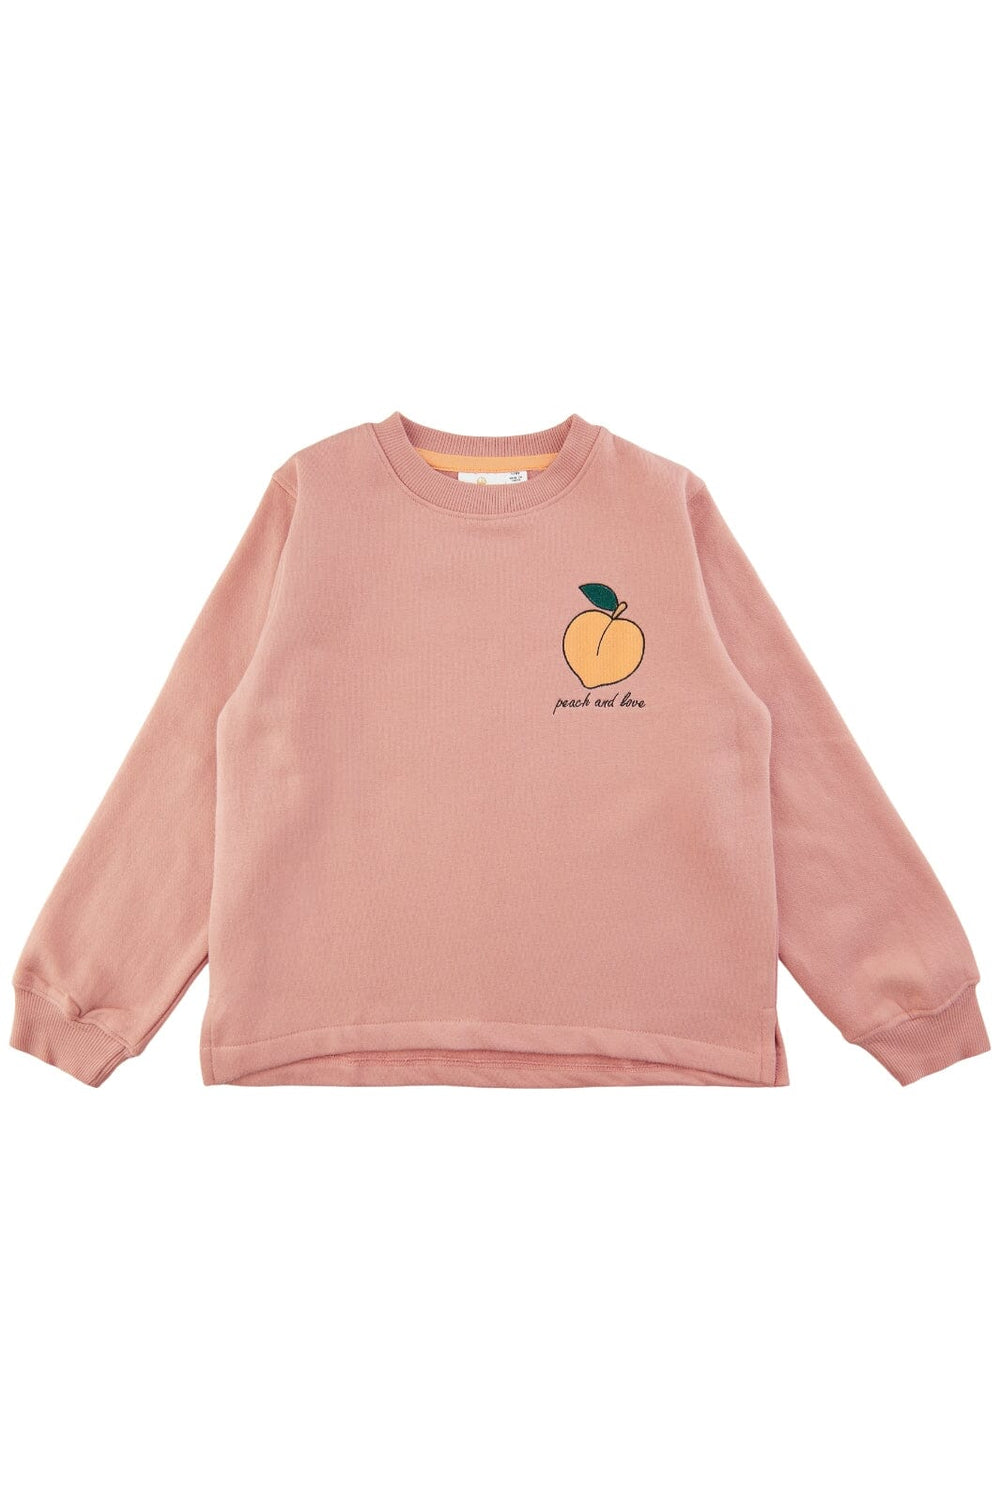 The New - Tnfemba Sweatshirt - Peach Beige 